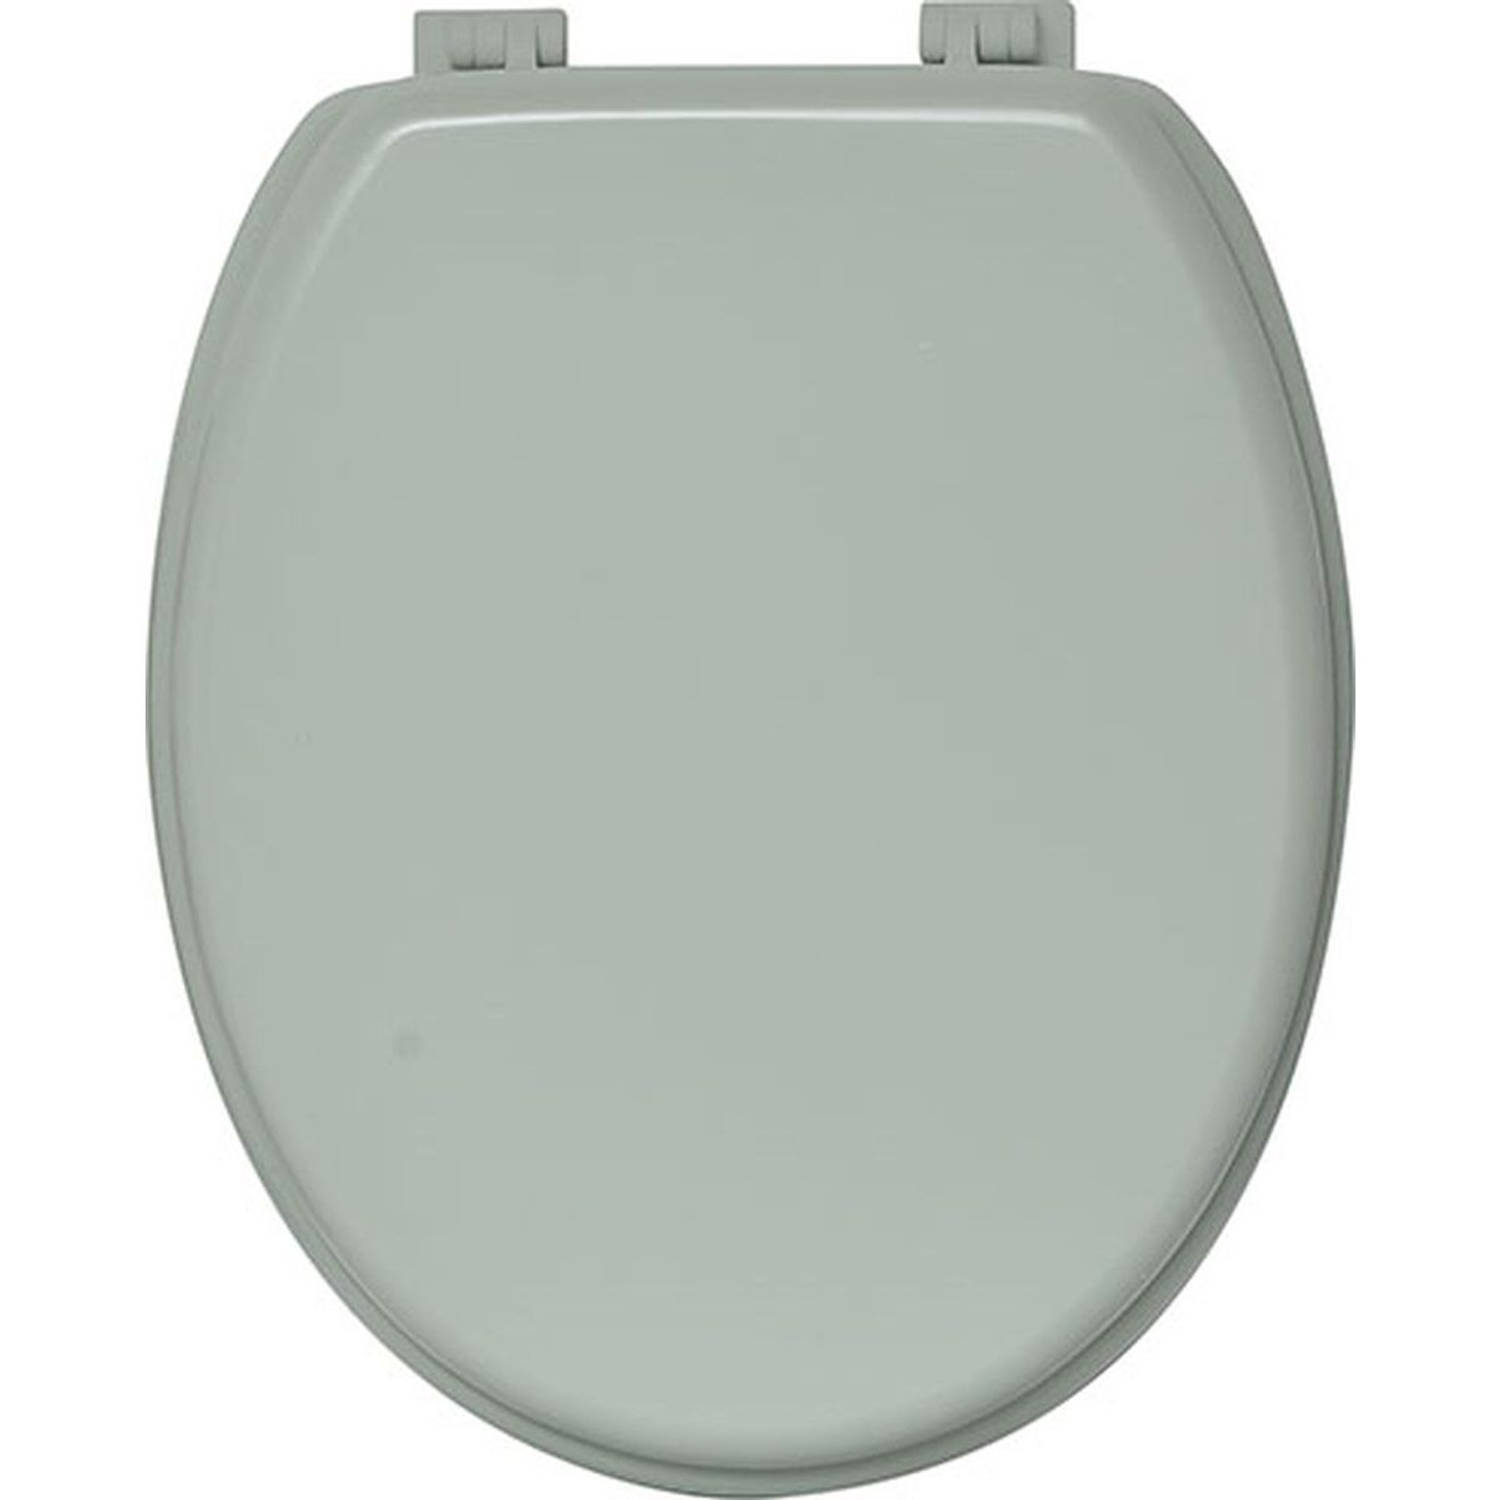 Gebor - Toiletbril - Toiletzitting - Wc-bril - Licht Mintgroen - Stijlvol - Kunststof Scharnieren - Mdf -